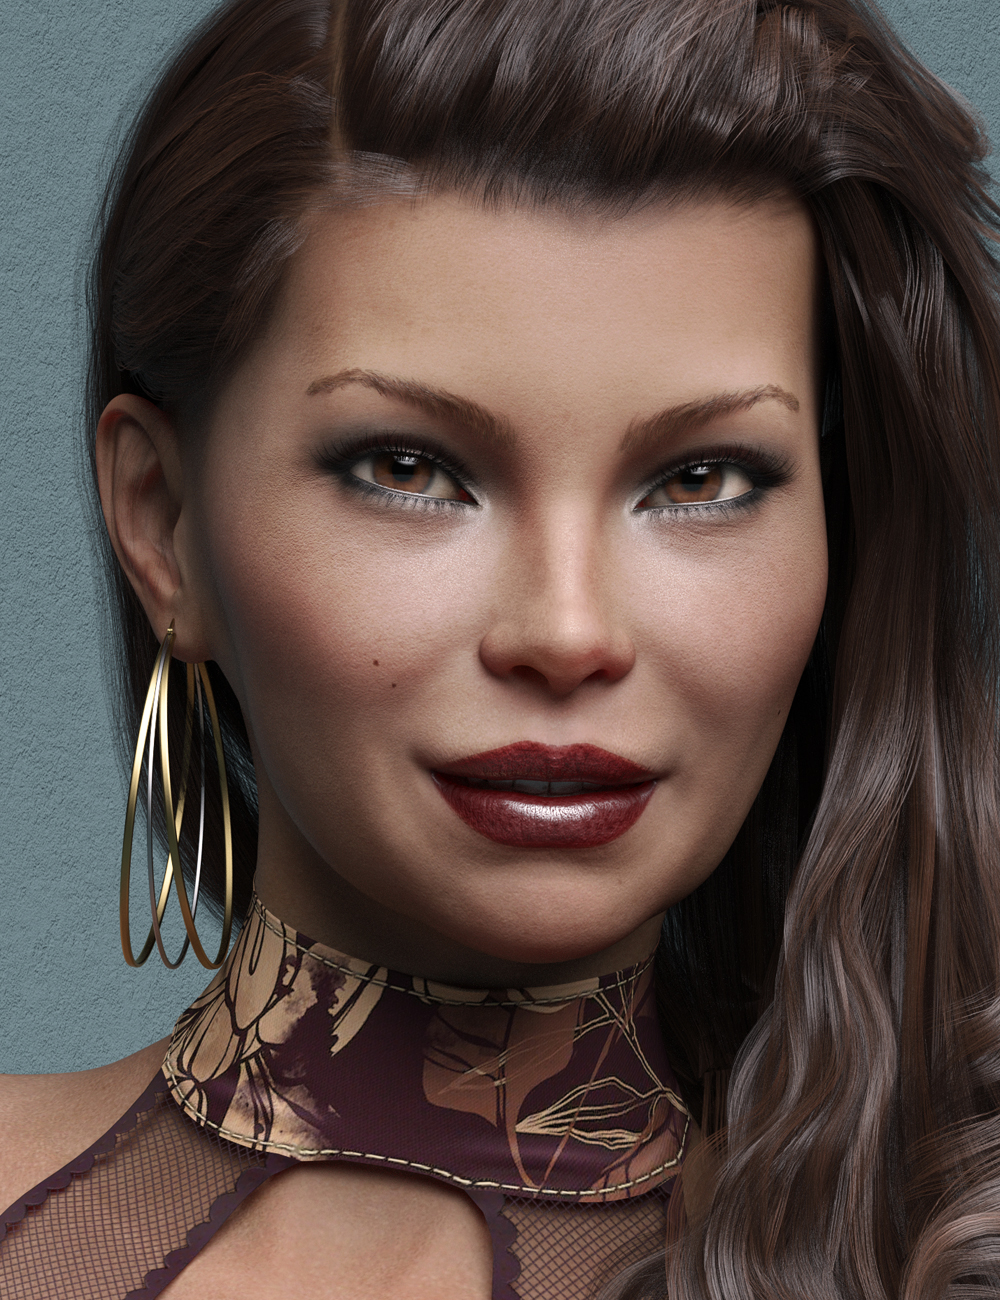 Tanis HD for Genesis 8 Female by: Emrys, 3D Models by Daz 3D